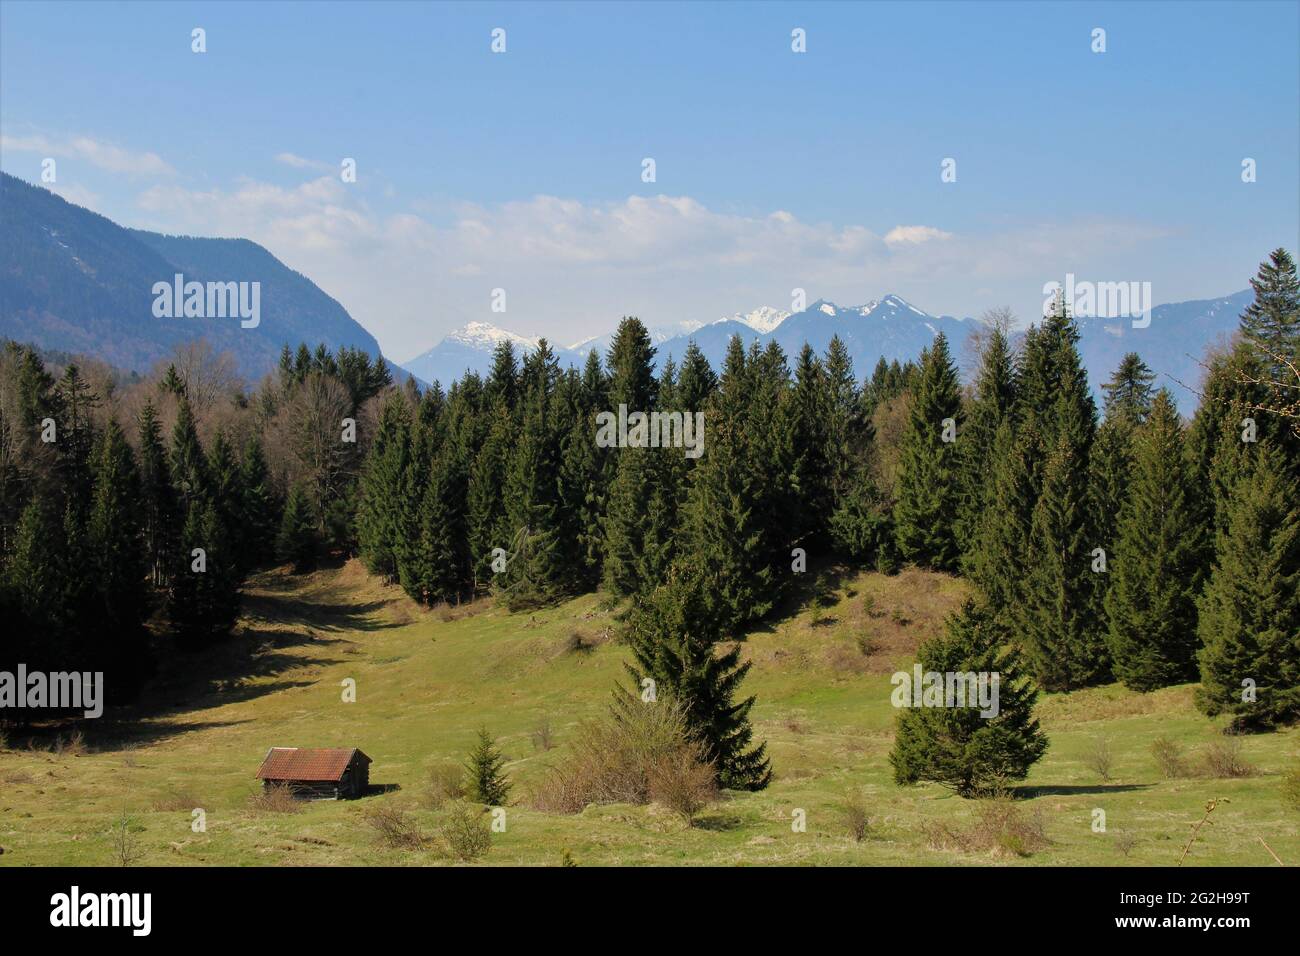 Paesaggio pre-alpino contro Estergebirge, Zugspitzgruppe (2962 m) e le Alpi Ammergau nei pressi di Ohlstadt, Das Blaue Land, alta Baviera, Baviera, Germania, Loisachtal Foto Stock